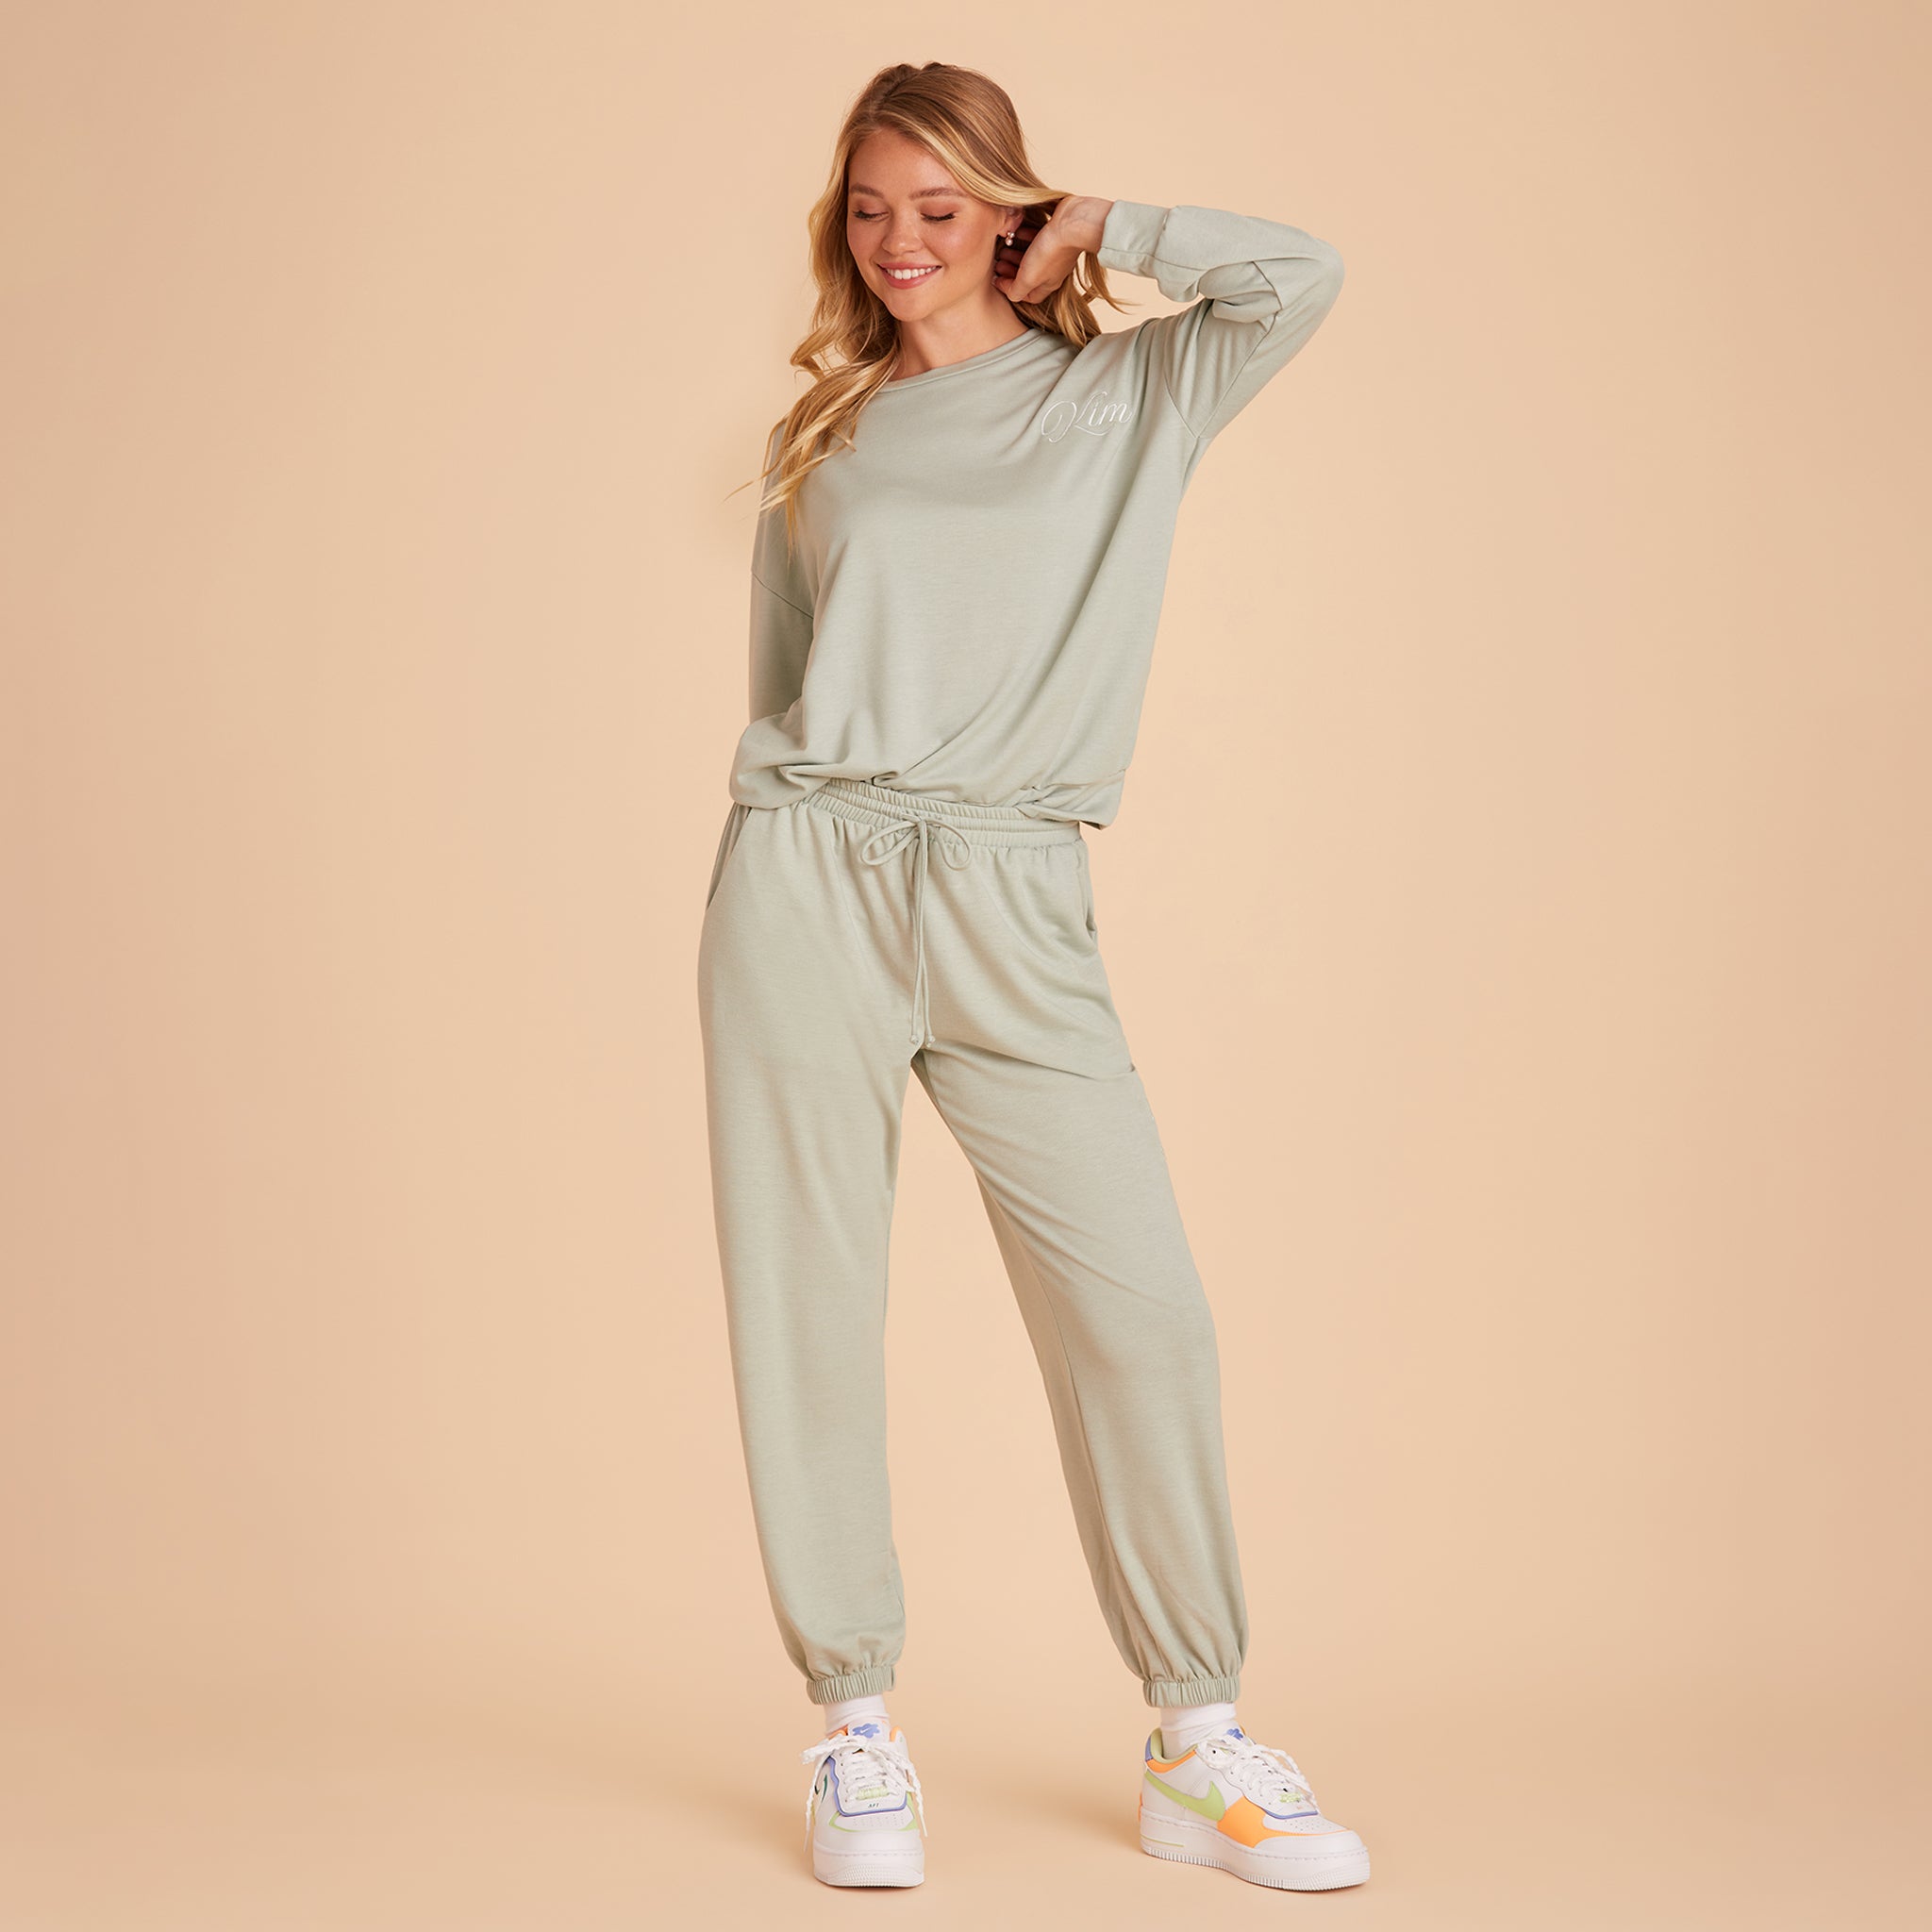 Keep It Cute Set - Olive - Small  Sweatsuit set, Matching sweatsuit,  Drawstring pants